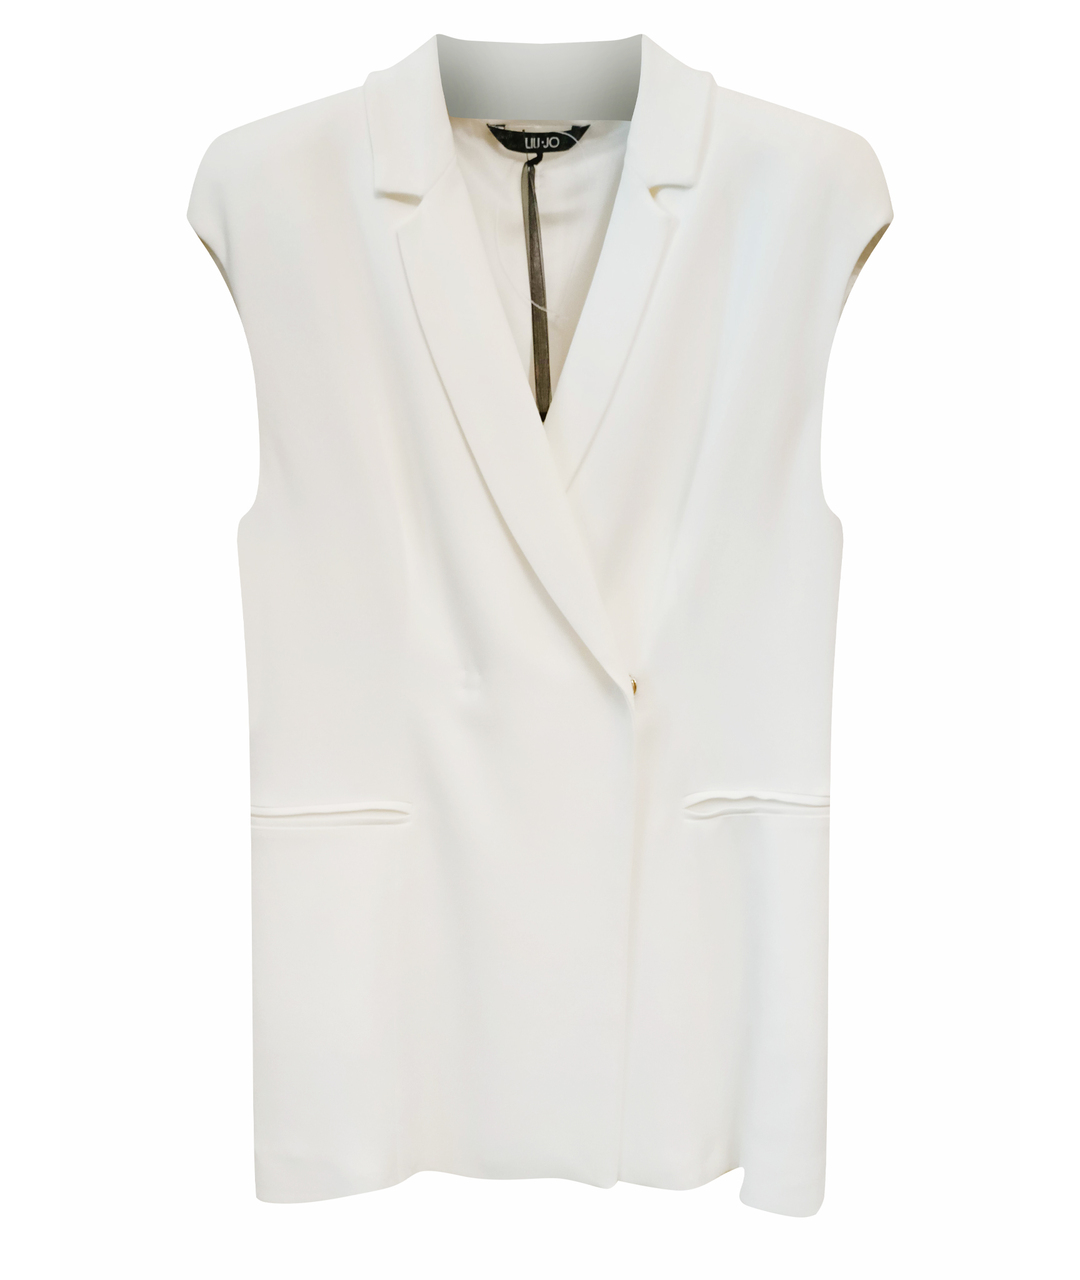 LIU JO Белый синтетический жакет/пиджак, фото 1